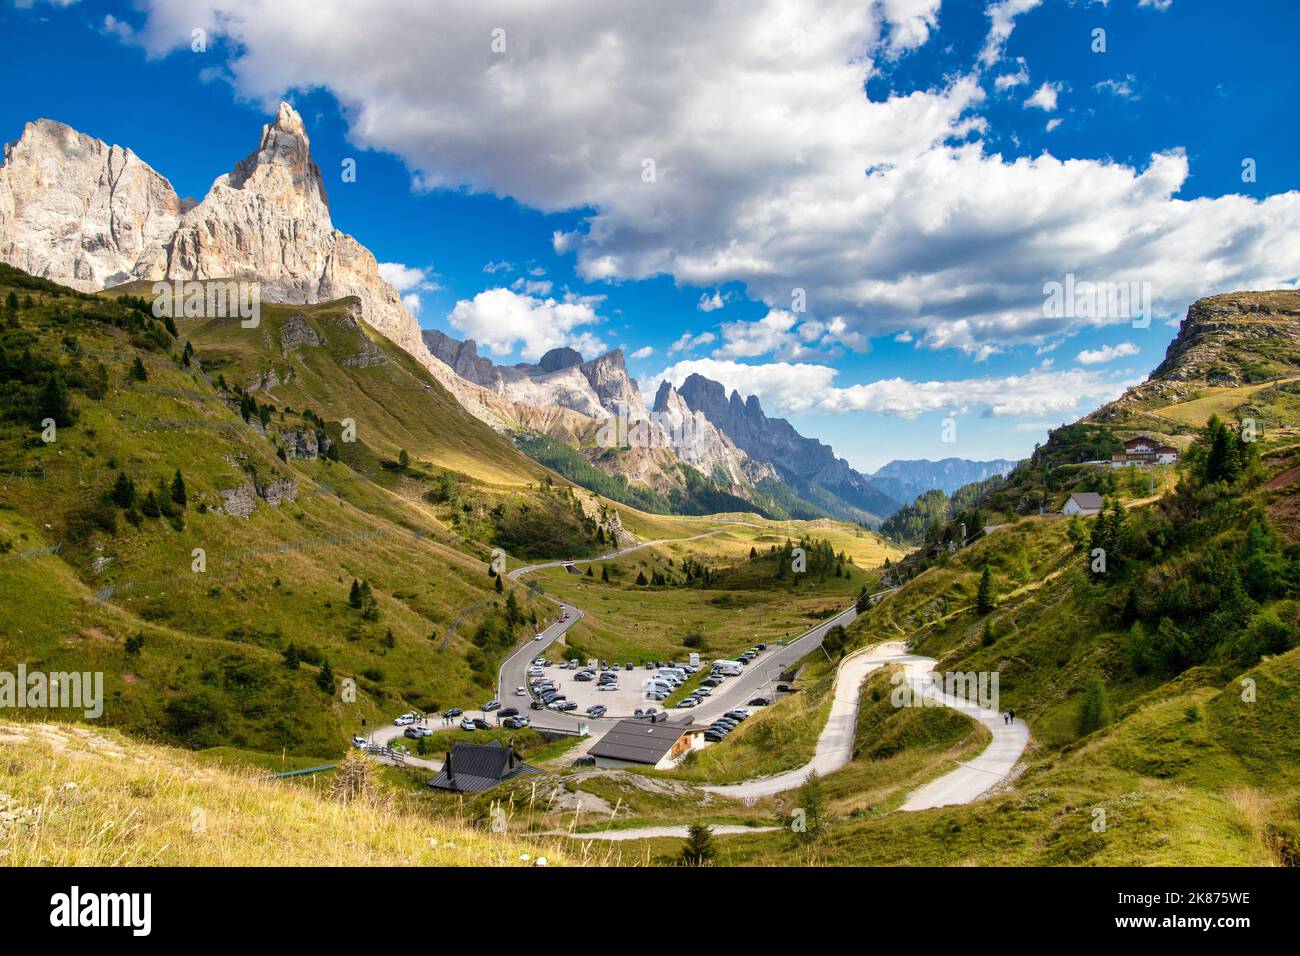 Pallido di San Martino, Parco Naturale di Paneveggio, Passo Rolle, Dolomiti, Trentino, Italia, Europa Foto Stock